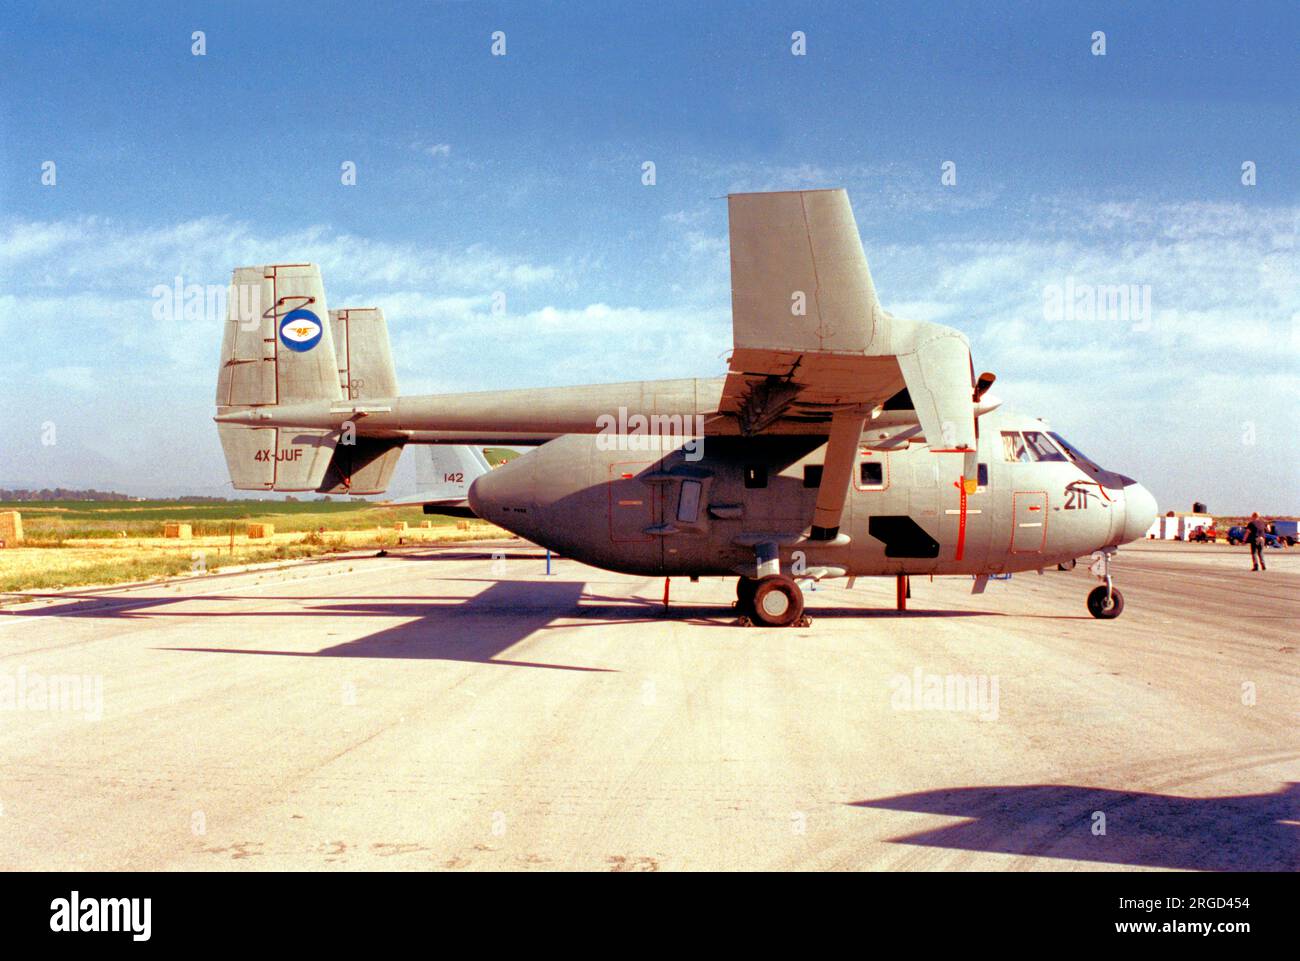 Israelische Luftwaffe - IAI Arava 202 211/4X-JUF (msn 107), vom 126. Stockfoto